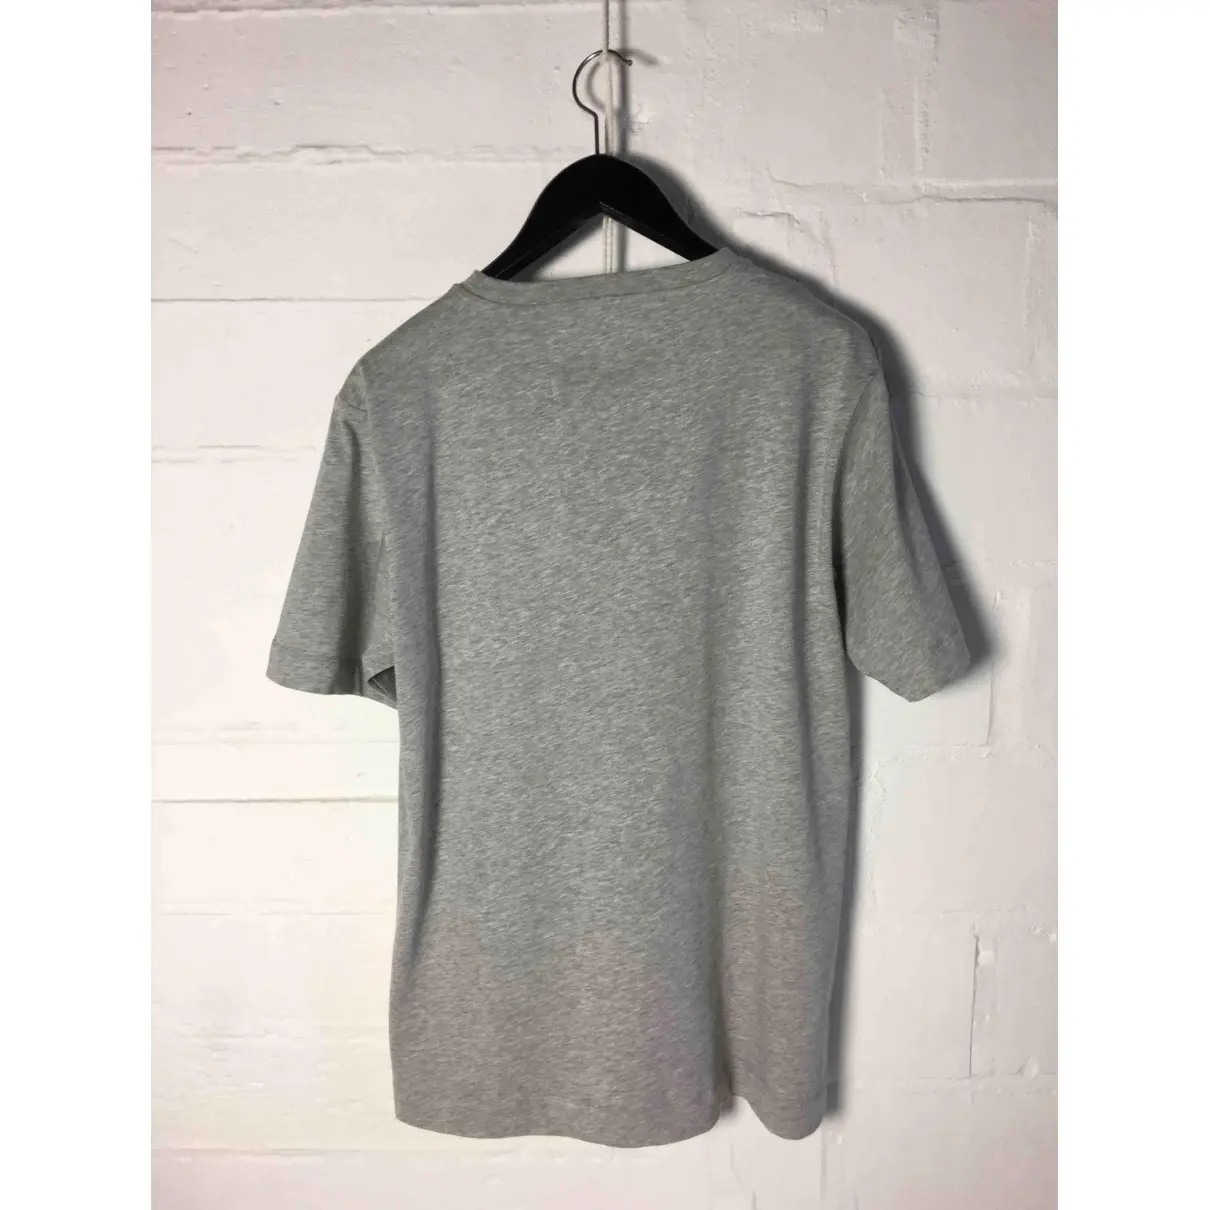 Buy Dries Van Noten Grey Cotton T-shirt online